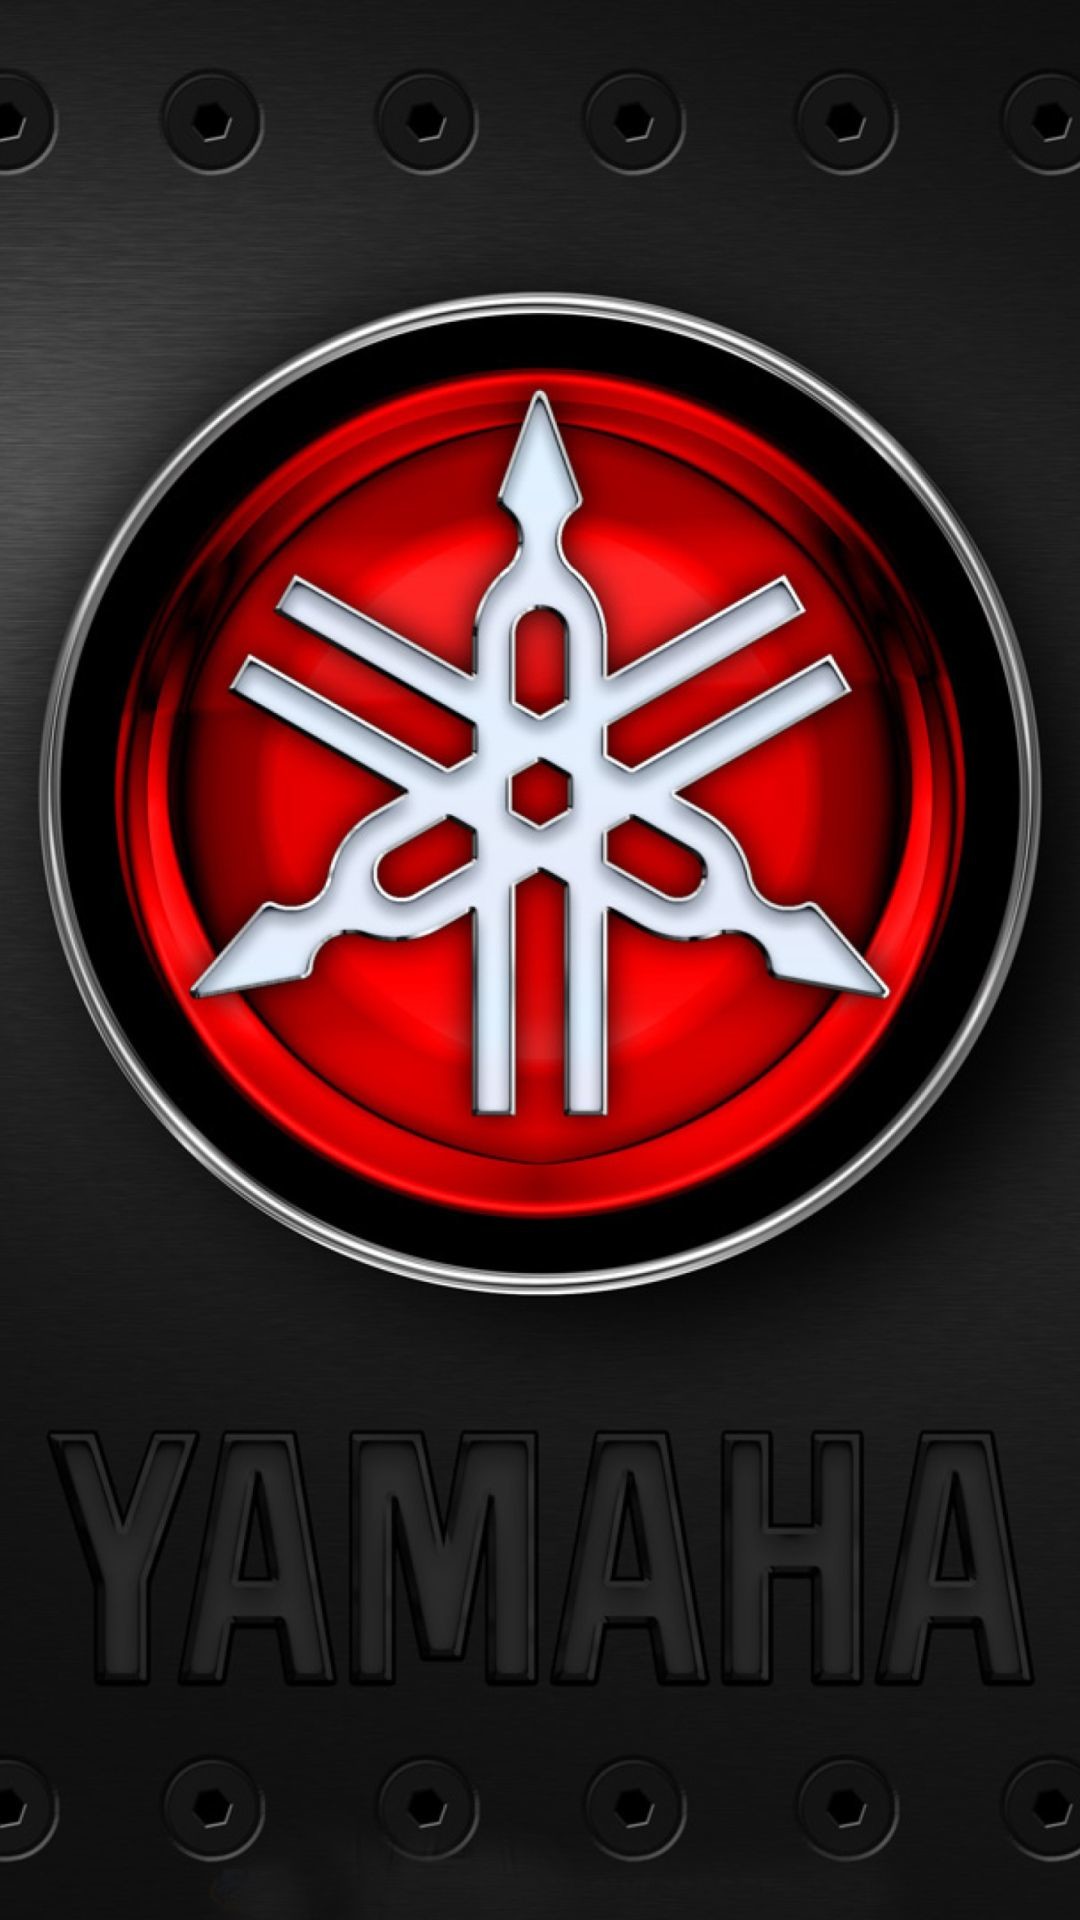 1080x1920, Yamaha Logo Wallpaper - Yamaha R1 Logo - HD Wallpaper 